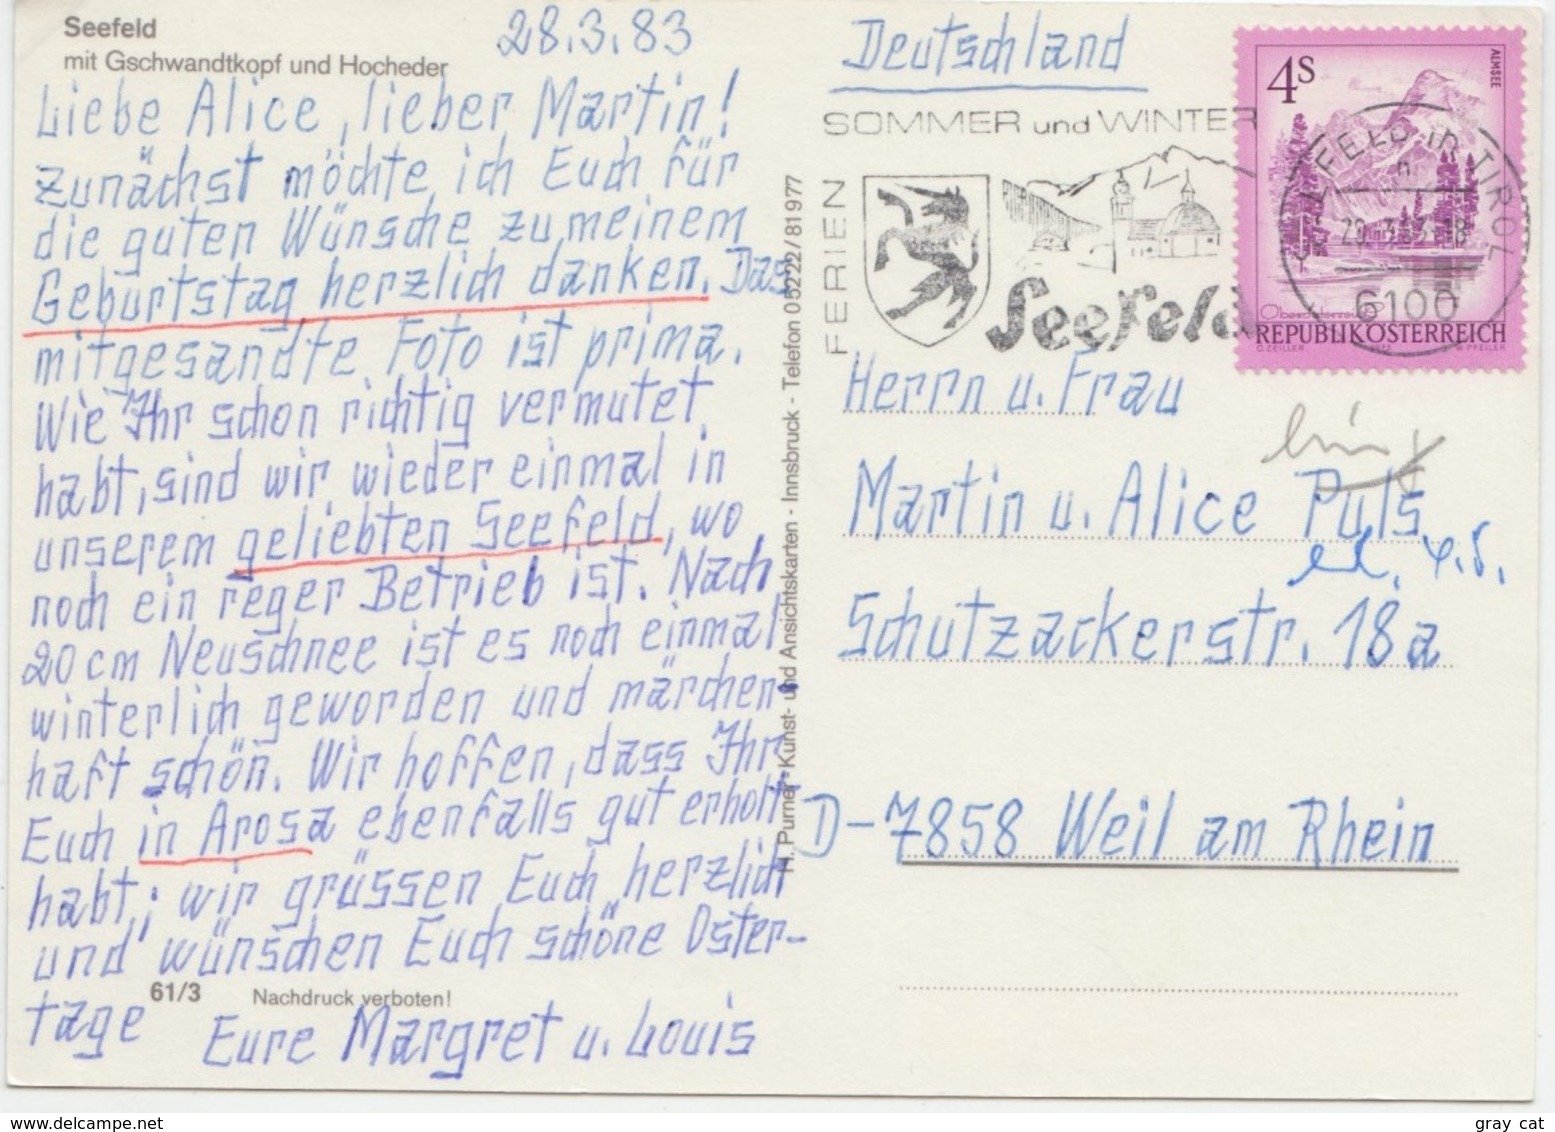 Seefeld, Tirol - 1200m, Austria, 1983 Used Postcard [21935] - Seefeld